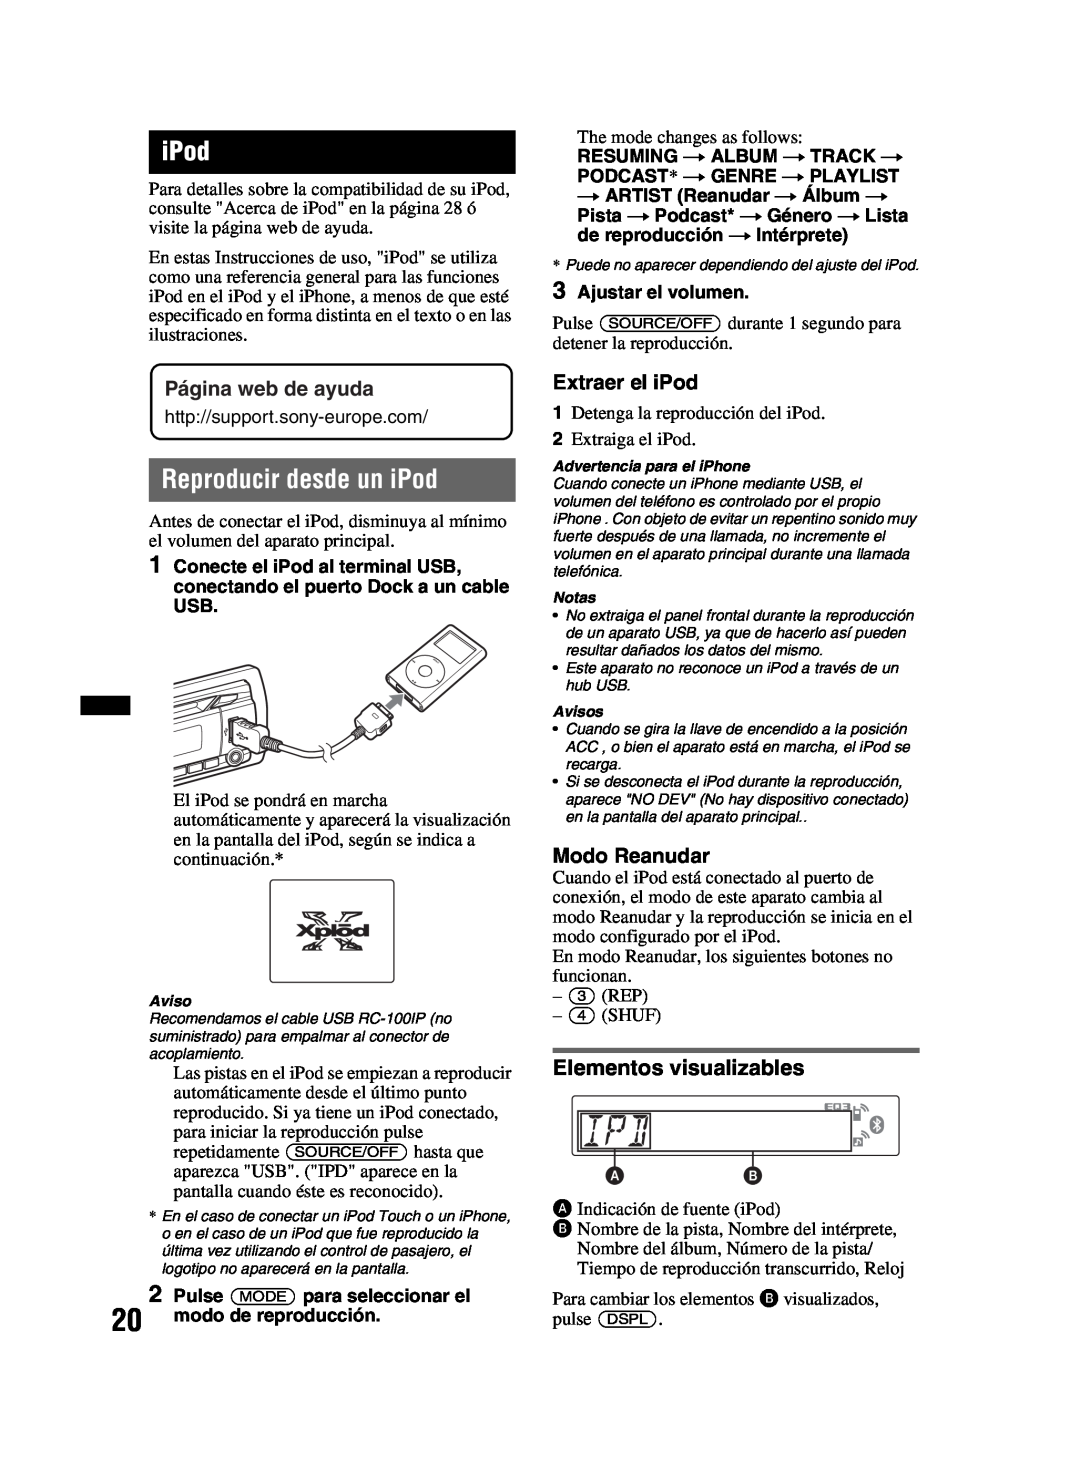 Sony MEX-BT3800U manual Reproducir desde un iPod, Extraer el iPod, Modo Reanudar, Página web de ayuda 